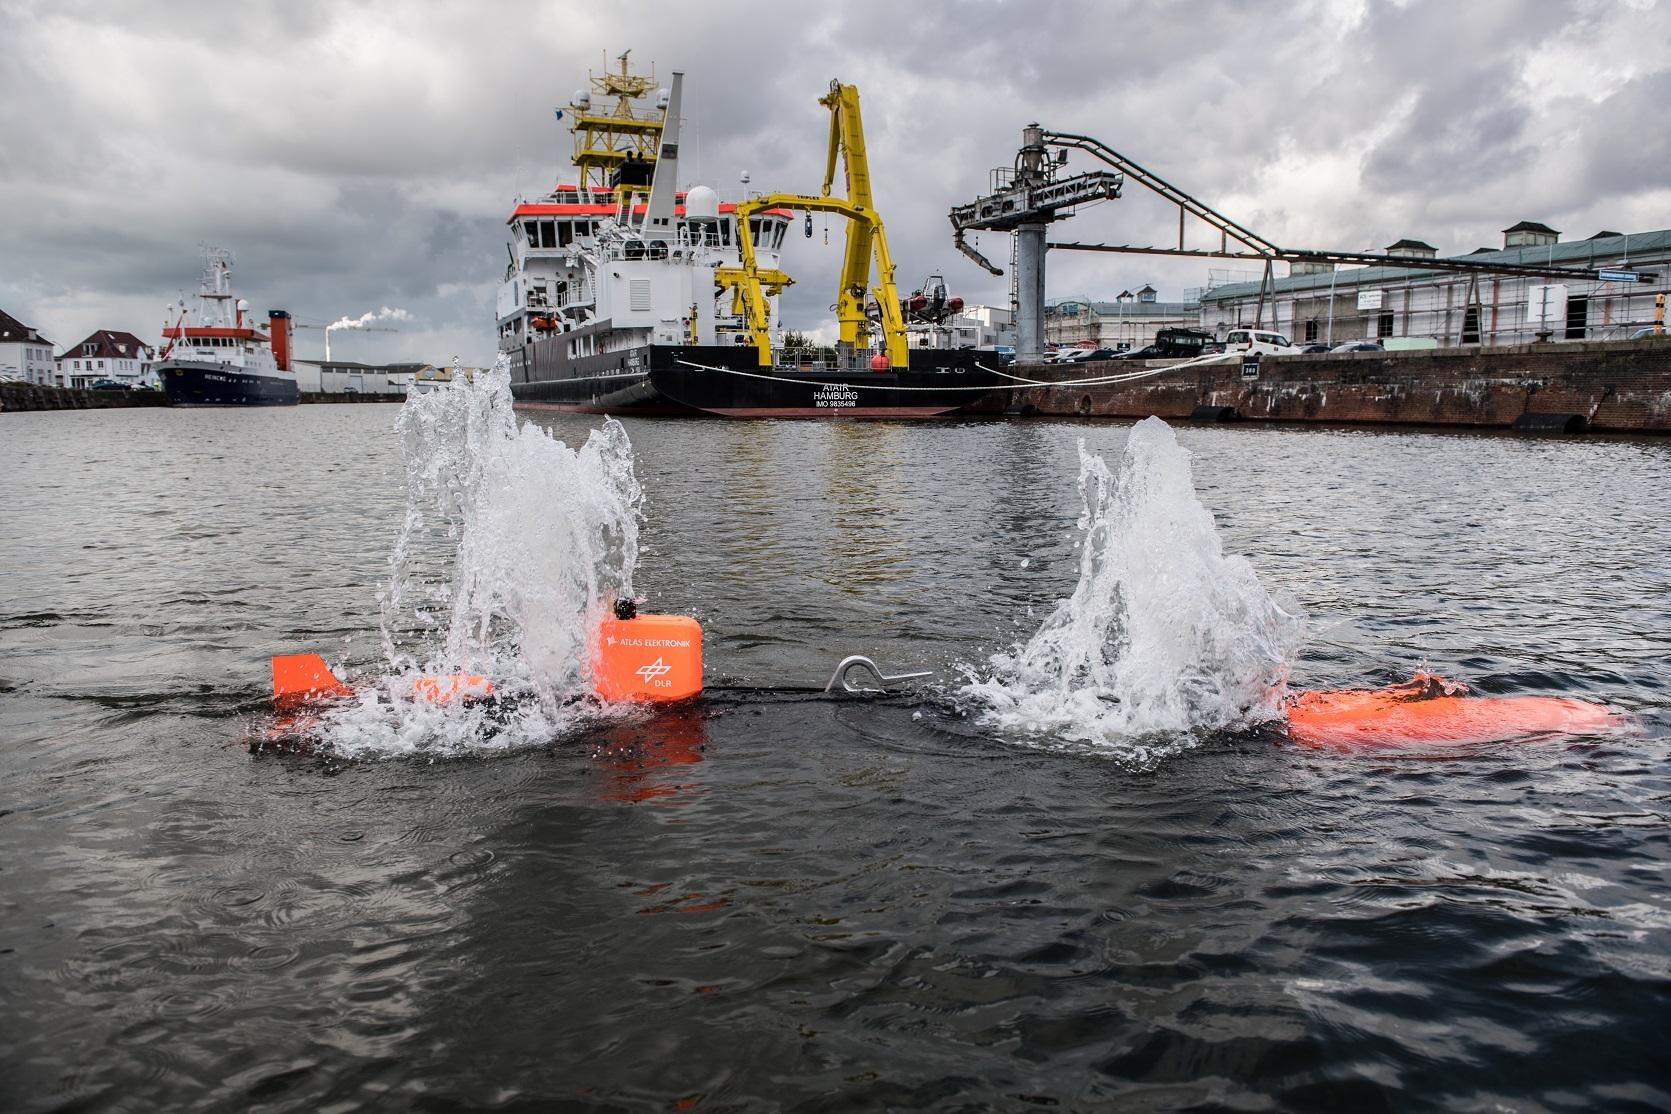 Die DLR-Seekatze taucht ab, um das Hafenbecken nach versunkenen Gütern zu scannen.